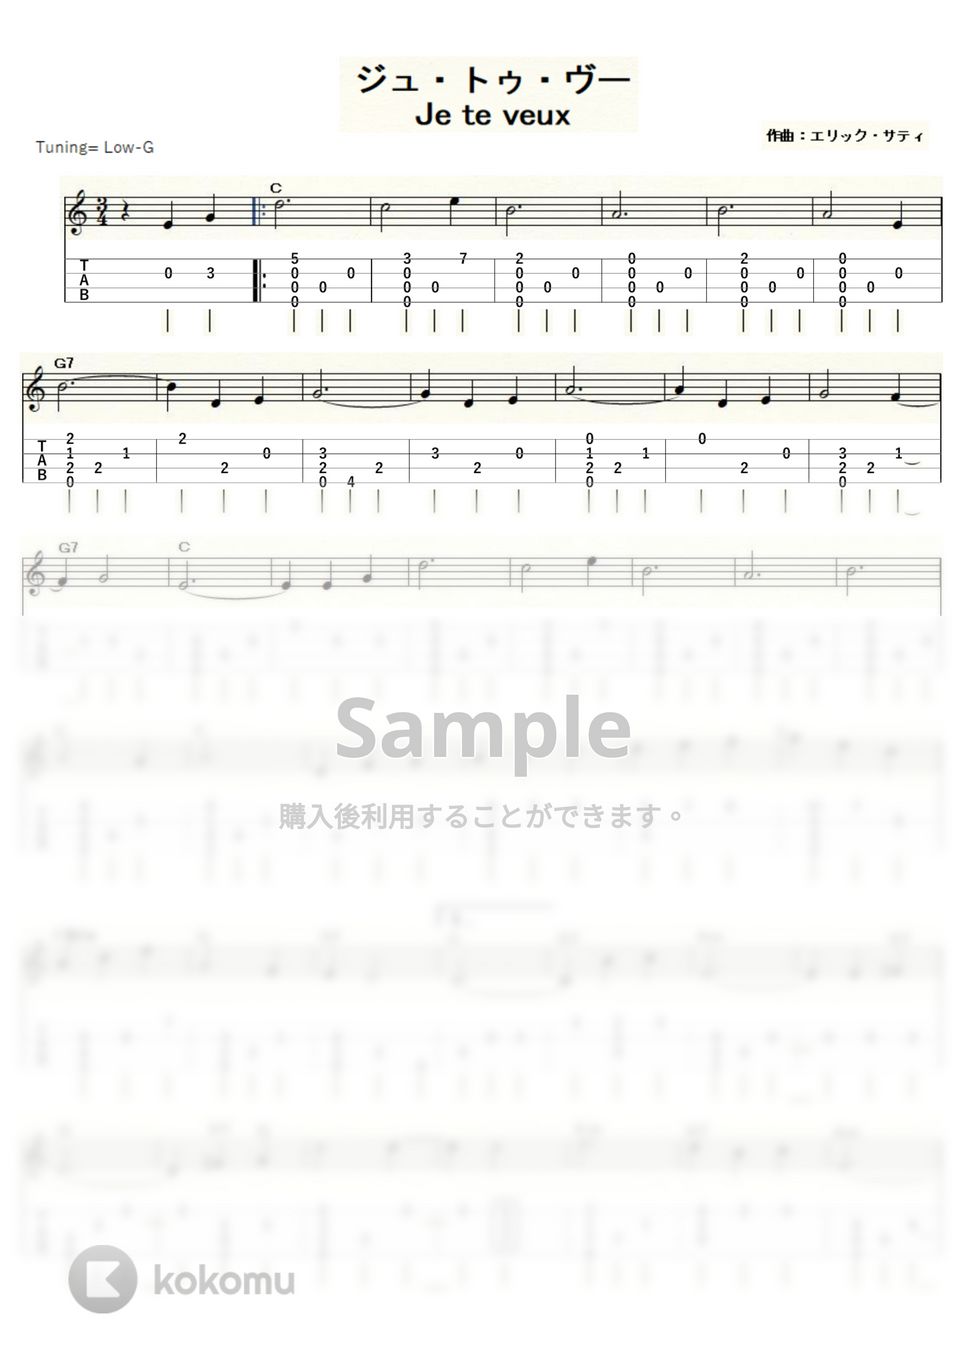 エリック・サティ - ジュ・トゥ・ヴー (ｳｸﾚﾚｿﾛ/Low-G/初級～中級) by ukulelepapa